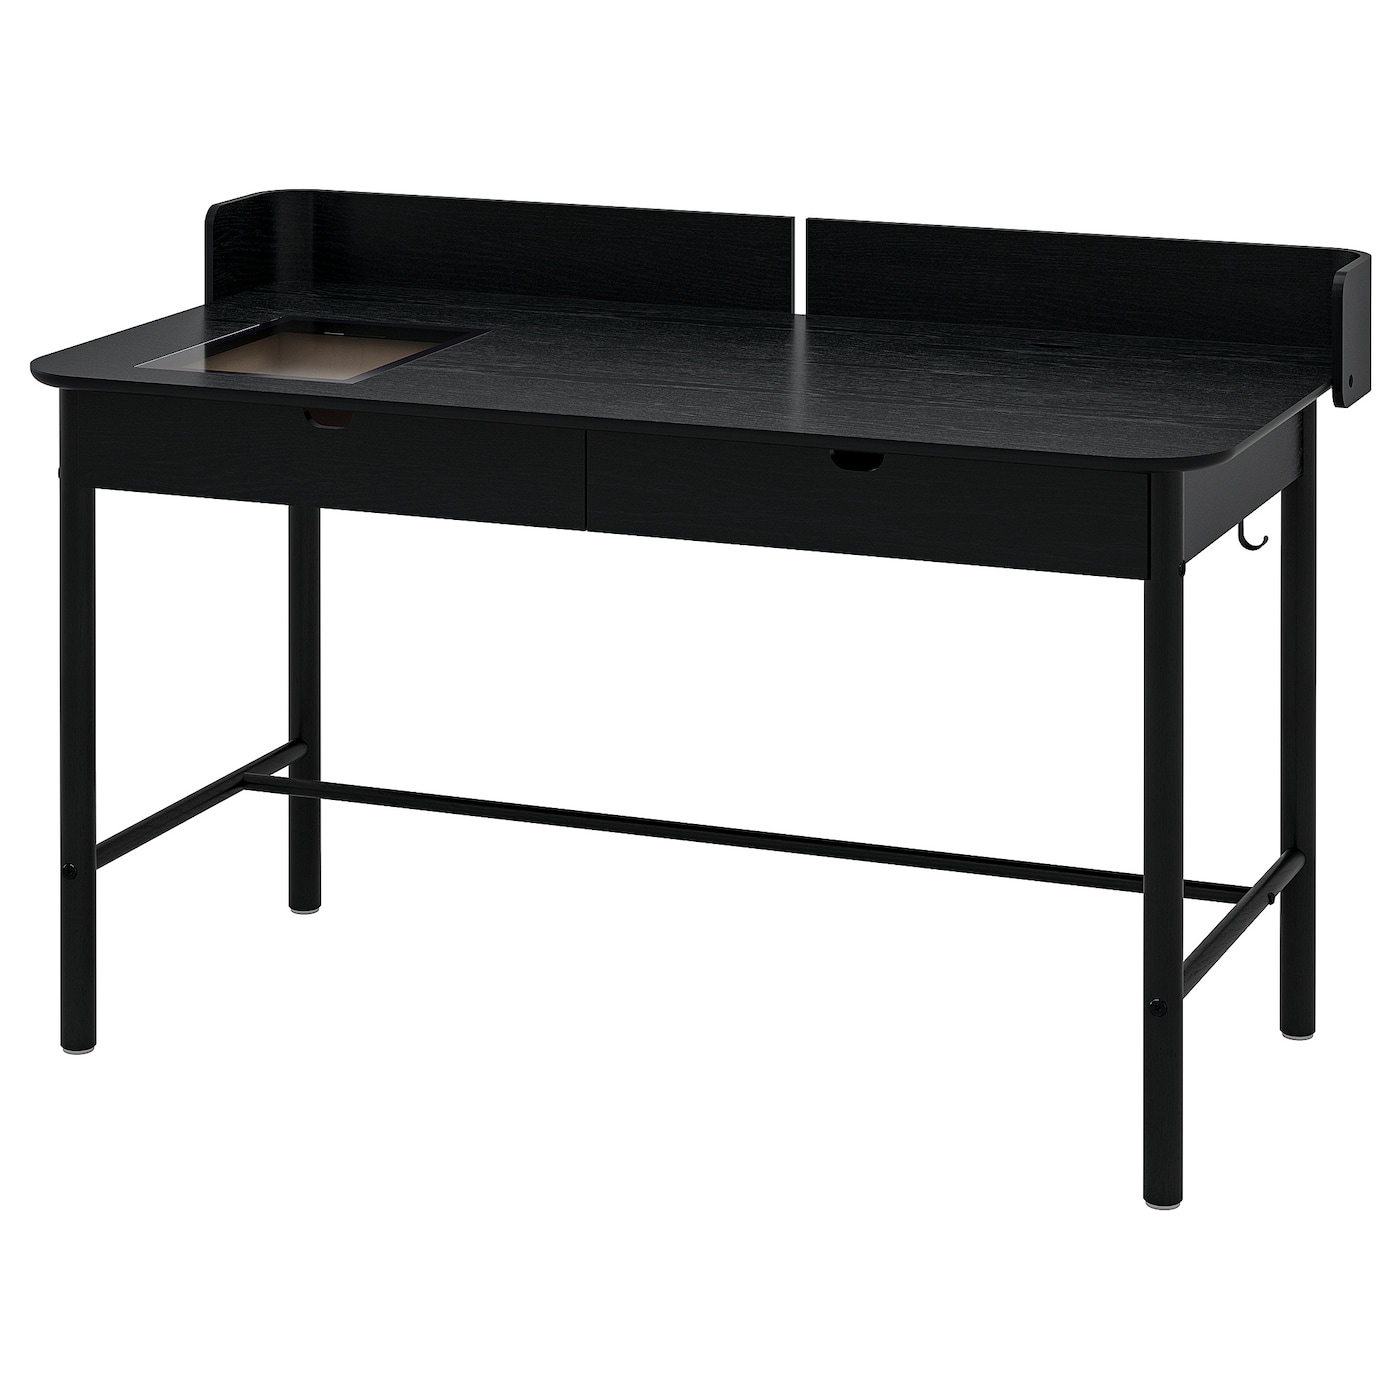 Письменный стол с ящиками - IKEA RIDSPÖ/RIDSPO, 140х70 см, антрацит, РИДСПО ИКЕА